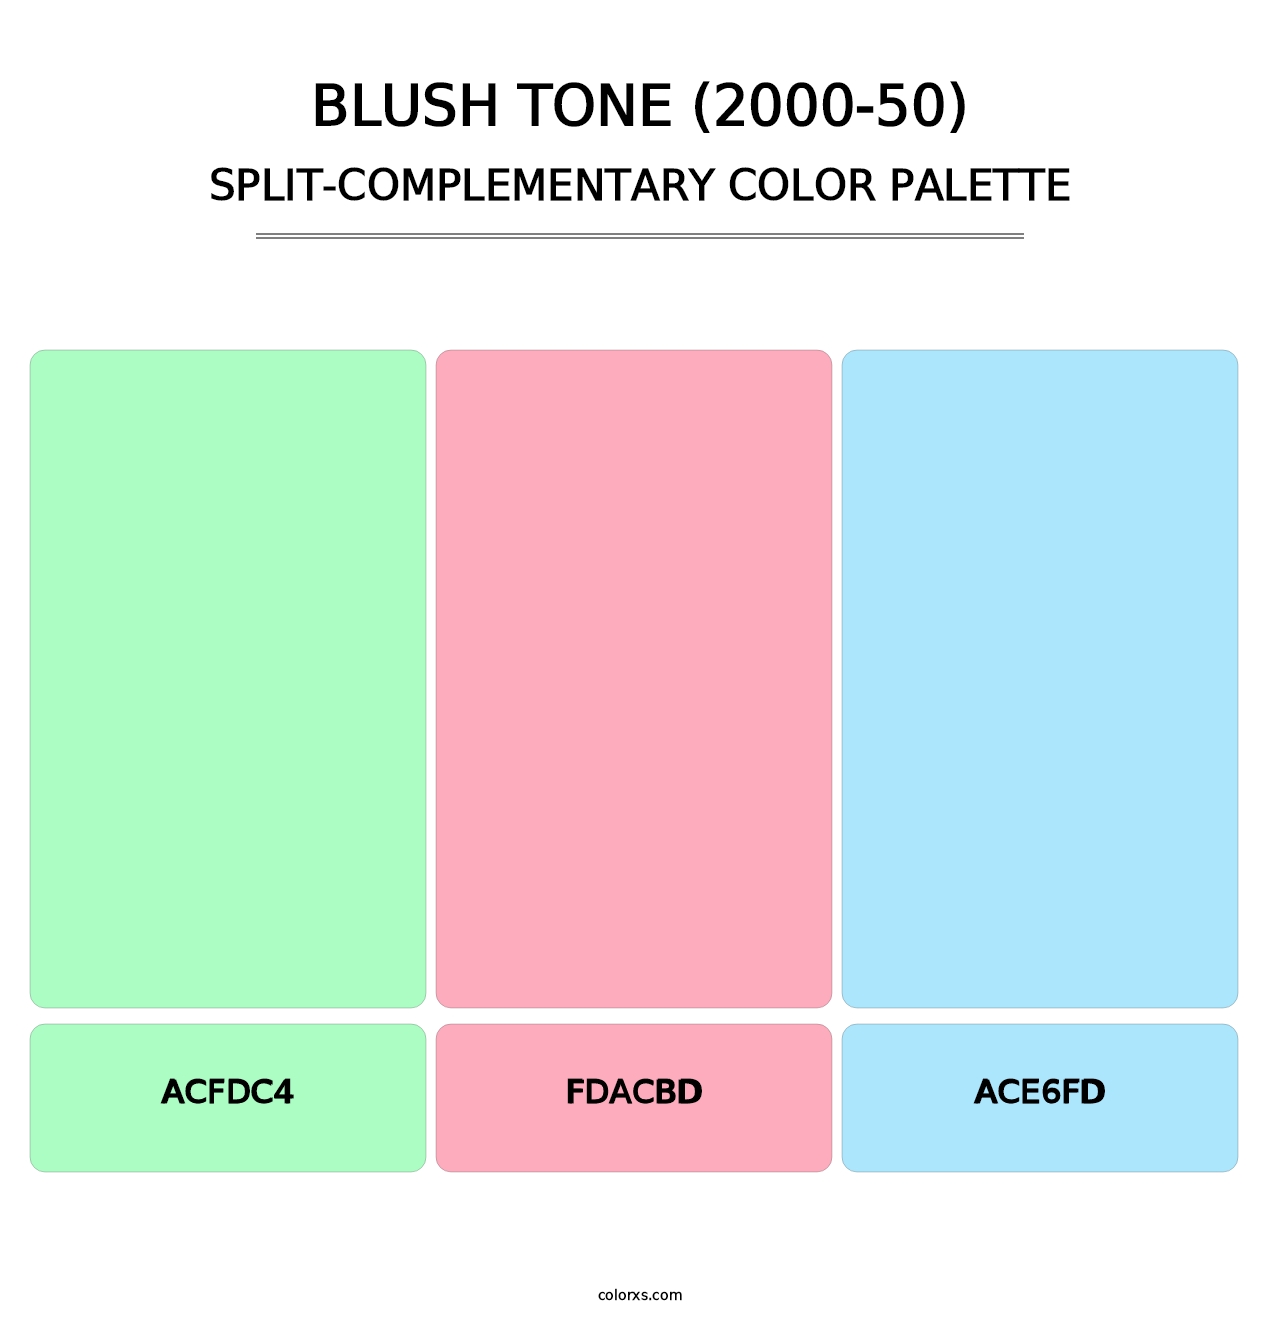 Blush Tone (2000-50) - Split-Complementary Color Palette